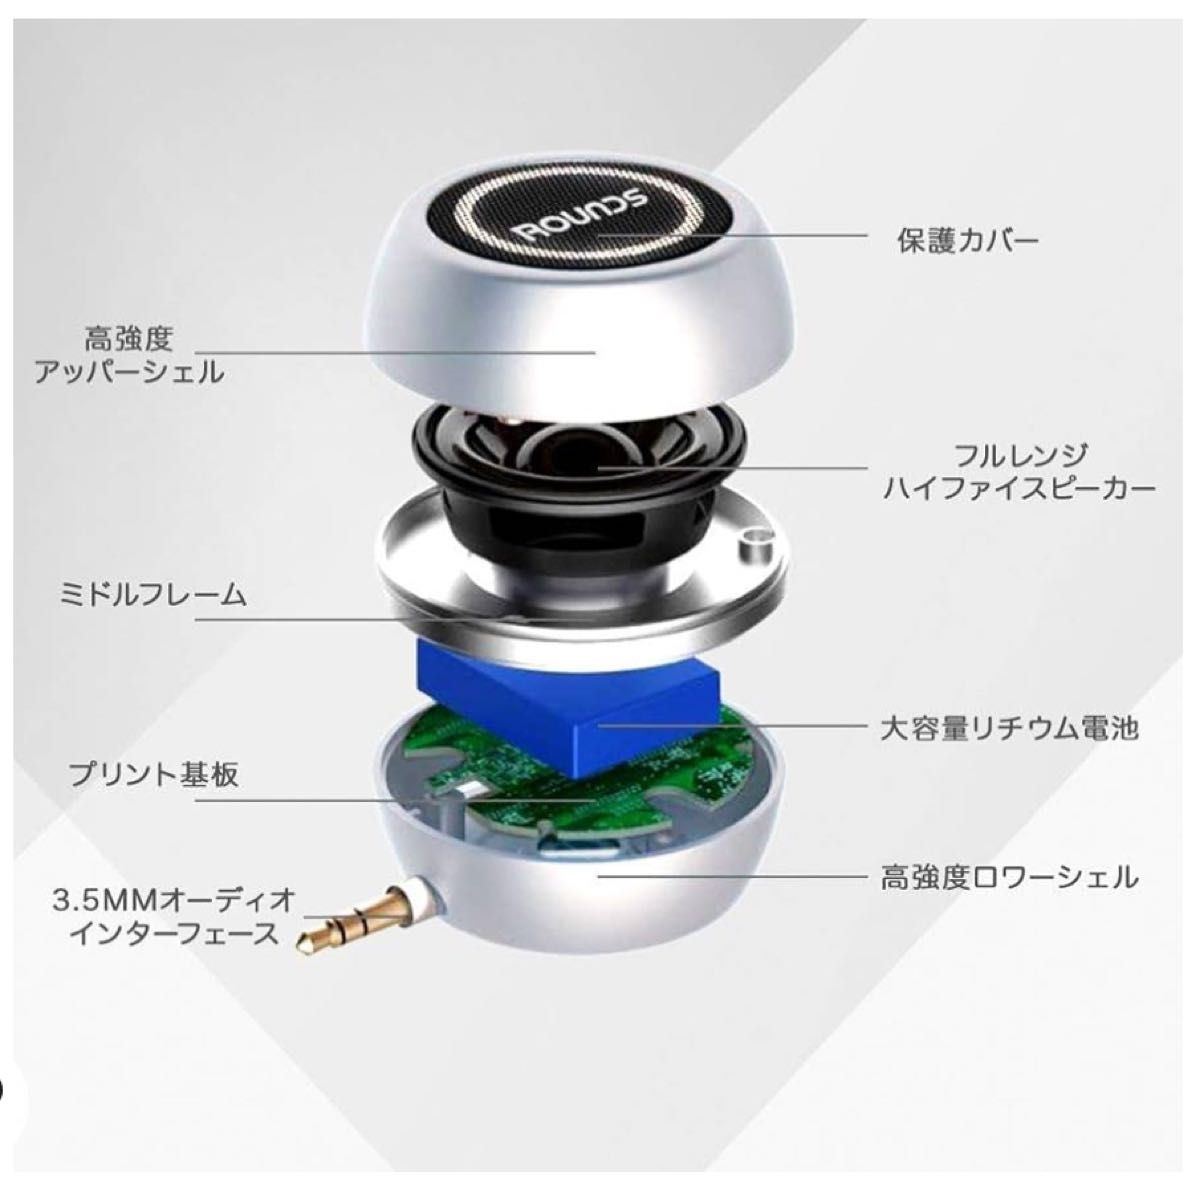 【正規品】 ROUNDS ポータブルスピーカー 日本人による企画・対応 ミニ スマホスピーカー USB充電